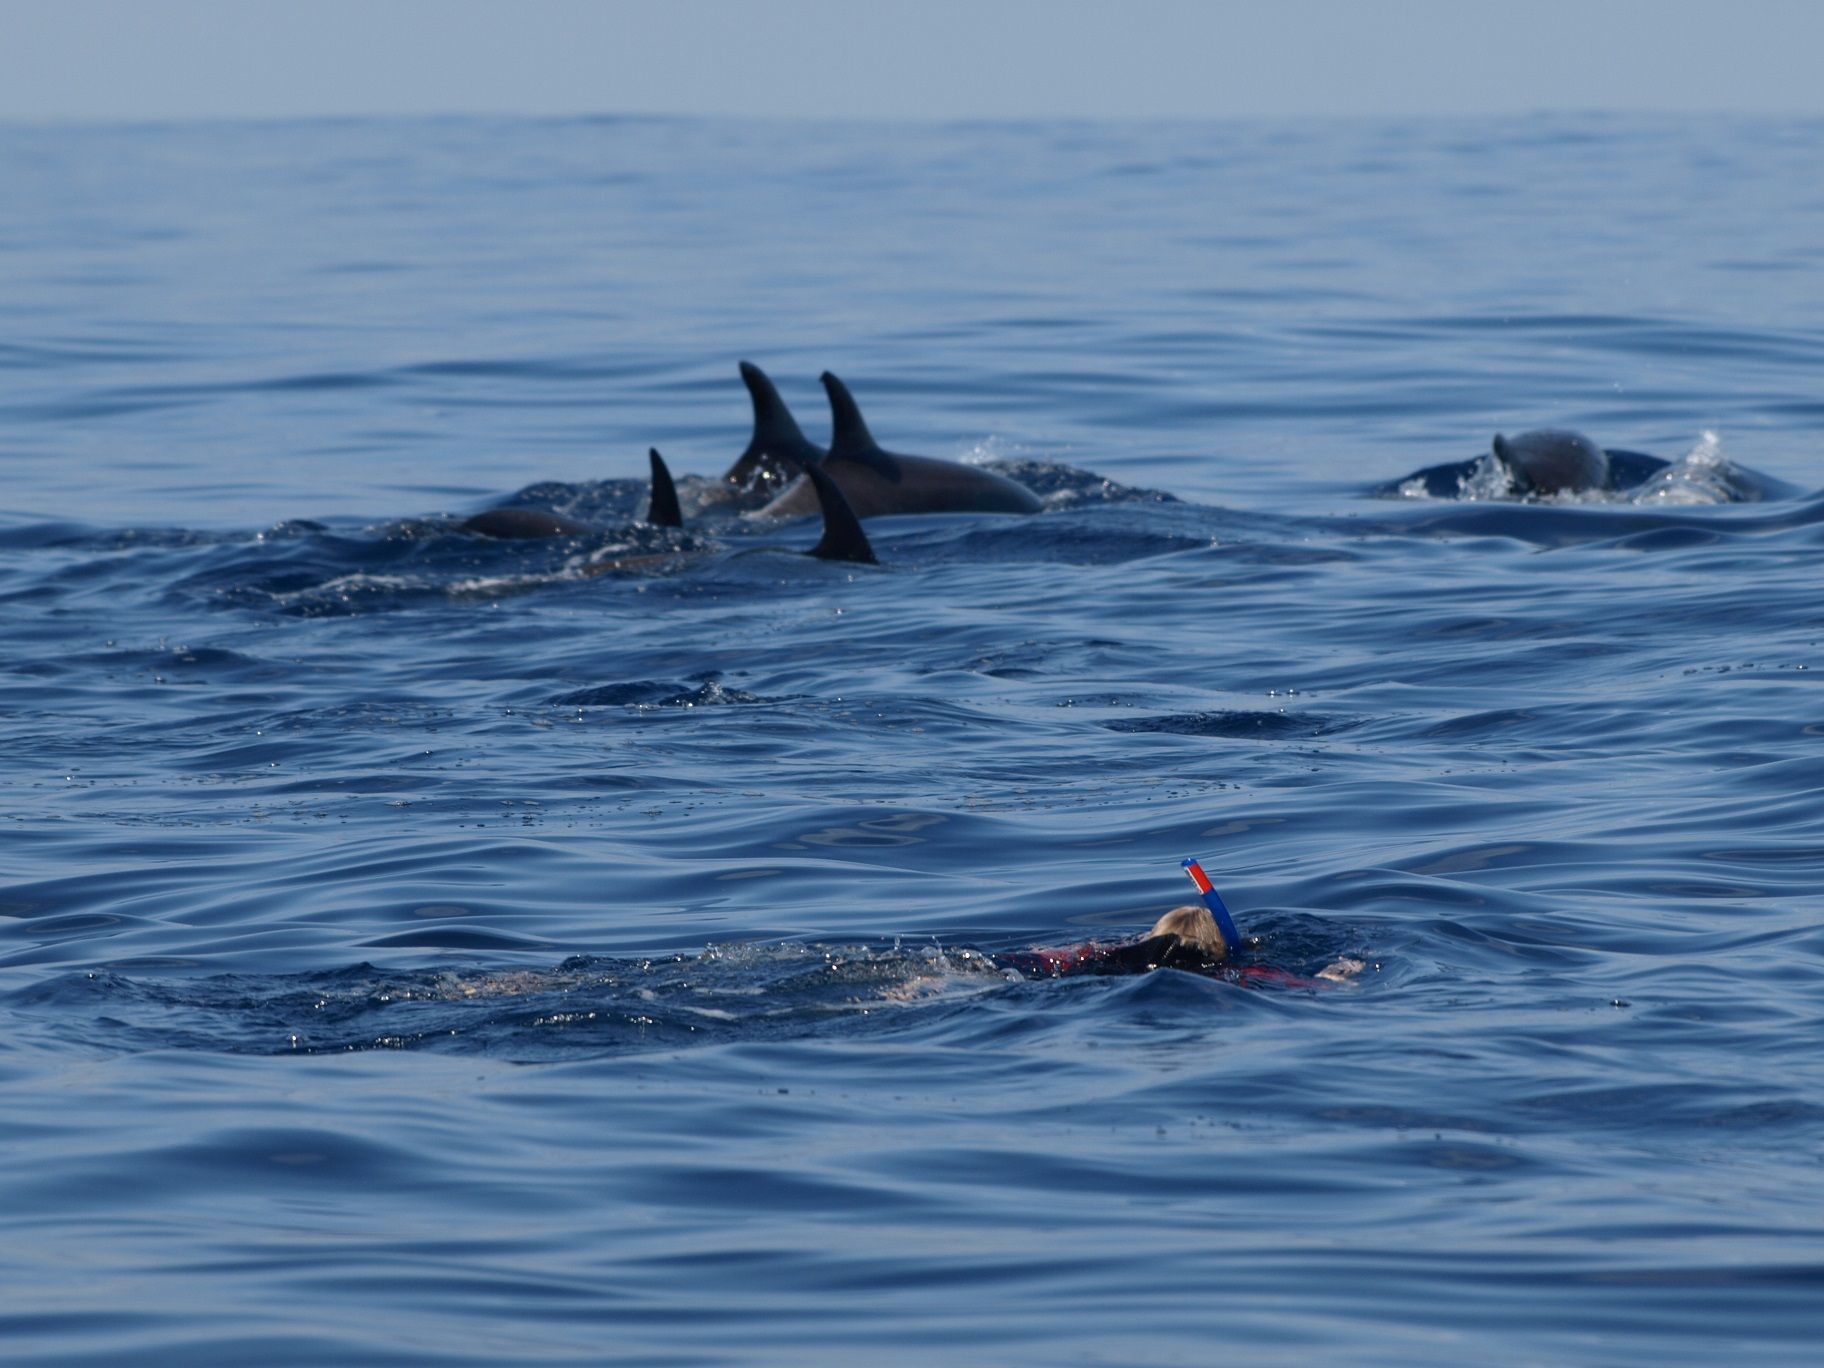 dolphin snorkelling 2 credit Futurismo Azores Adventure 2